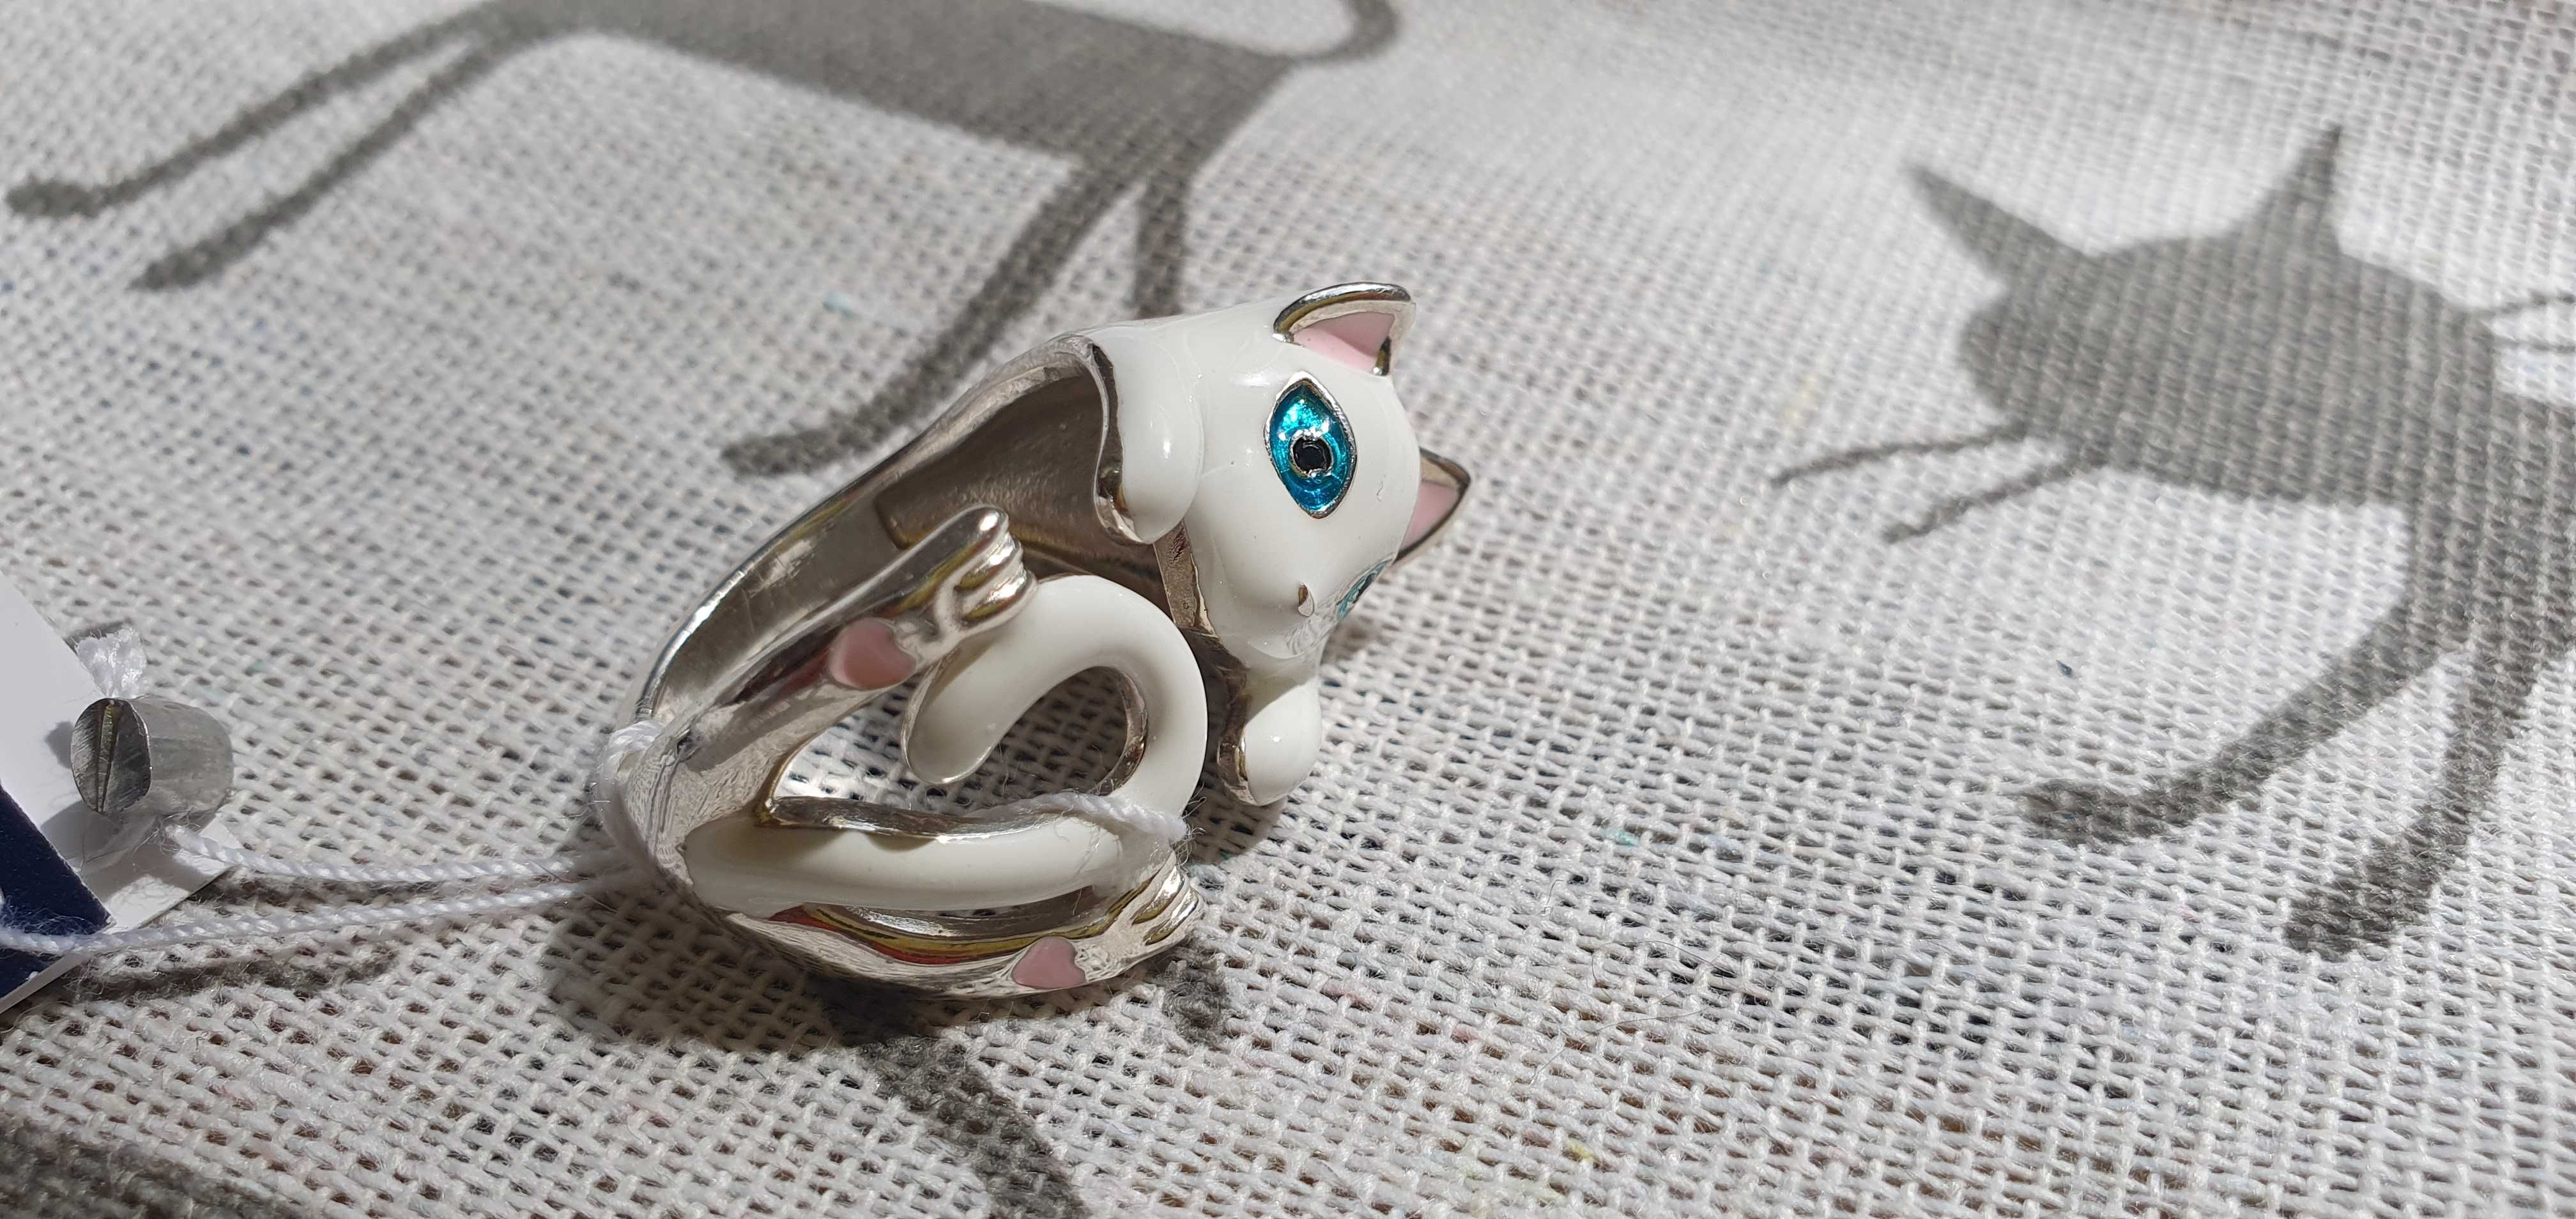 Magiczny pierścien Biały kot, emalia. serca na piętach. Srebro 925.